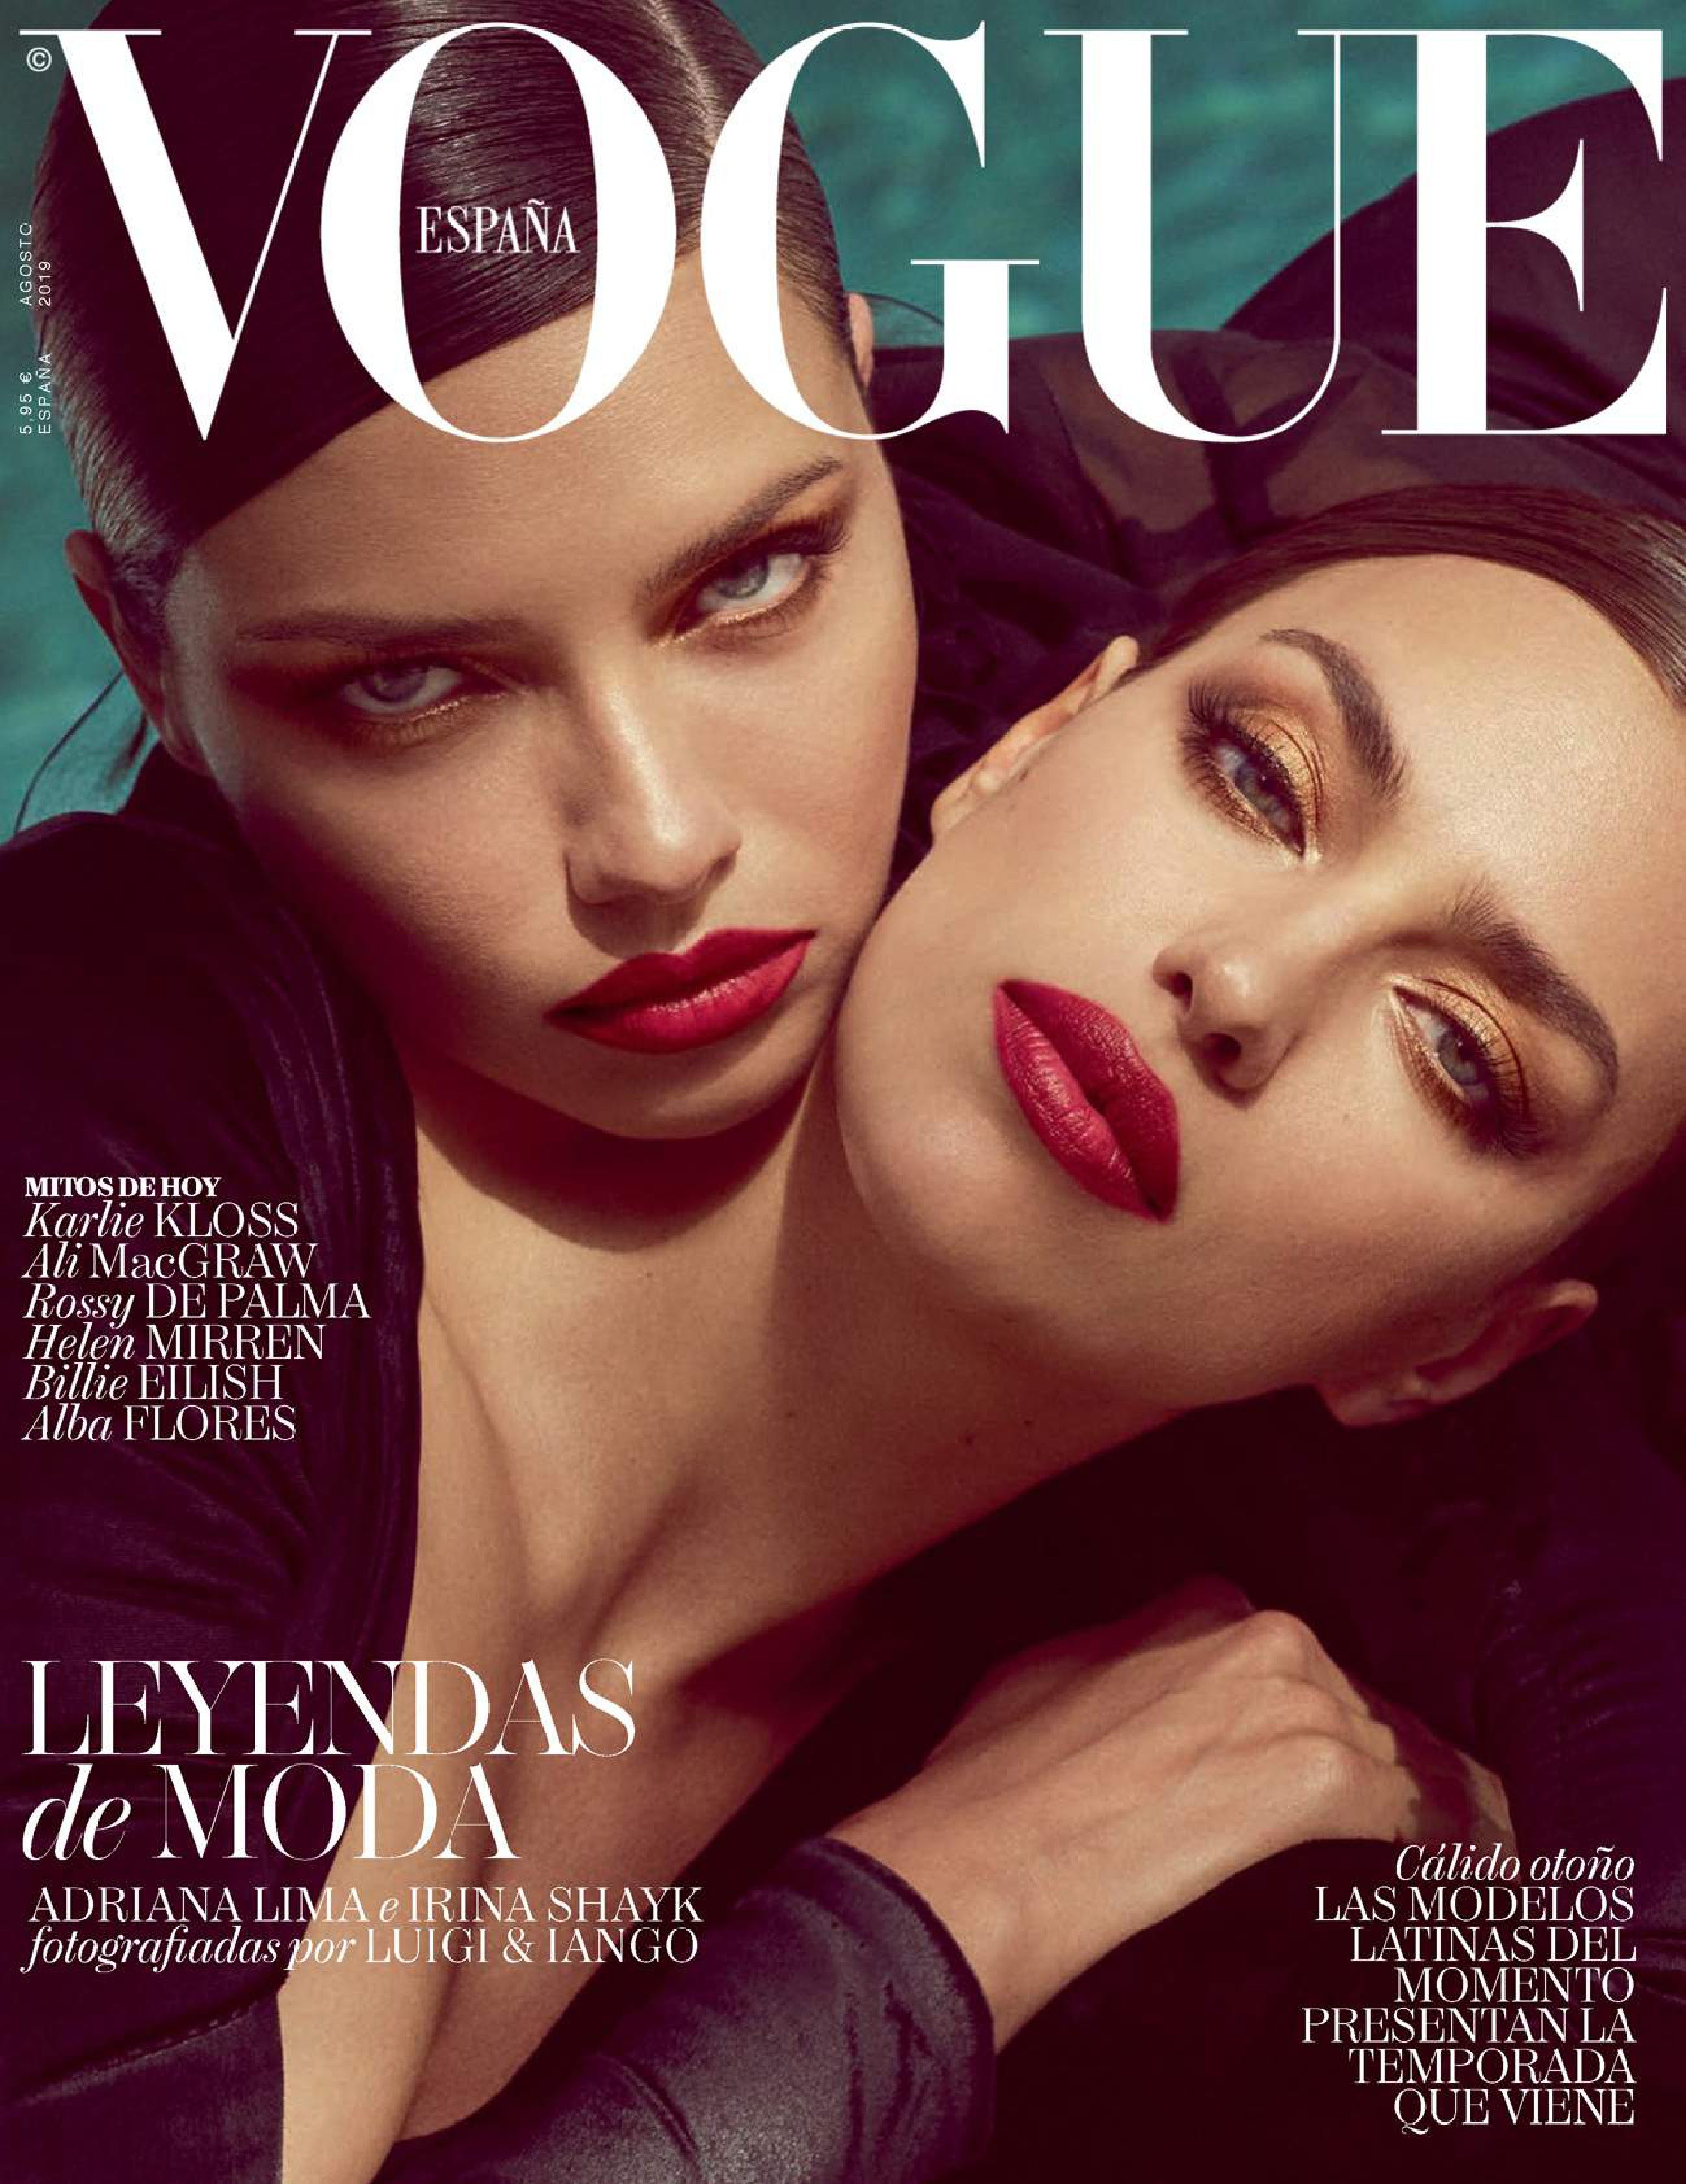 Adriana Lima Irina Shayk TheFappening.Pro 18 - Adriana Lima & Irina Shayk for Vogue Spain (22 Photos)